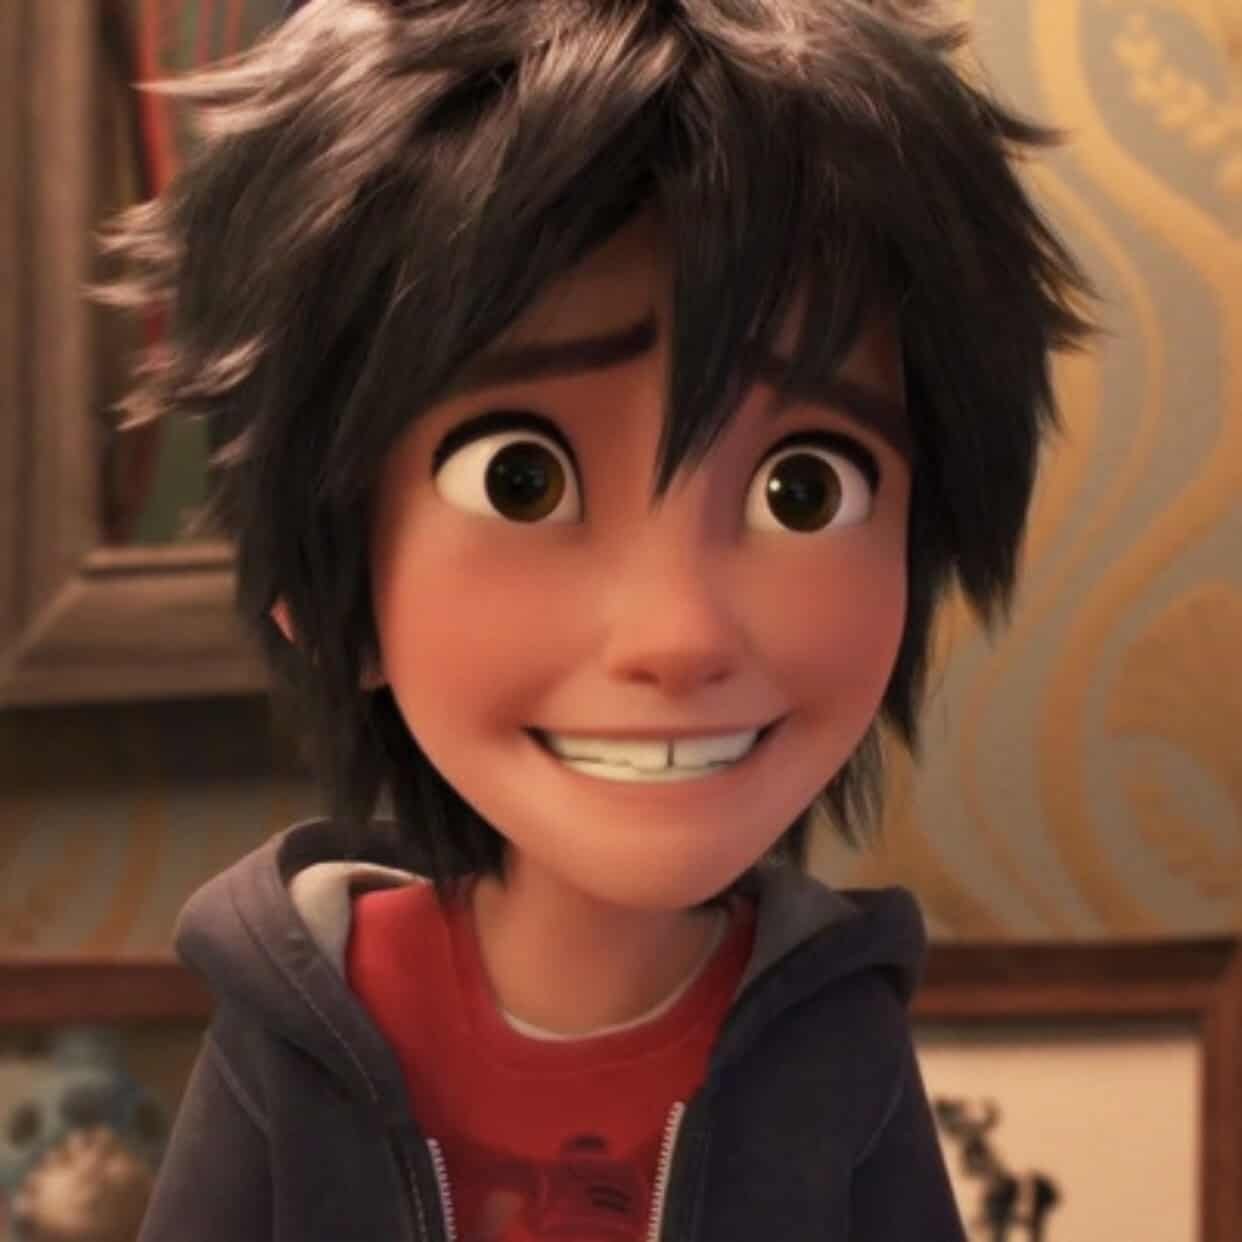 Gros plan d'un jeune personnage animé de Disney aux cheveux noirs hérissés et aux grands yeux verts, souriant largement. Il porte un t-shirt rouge sous un sweat à capuche bleu.